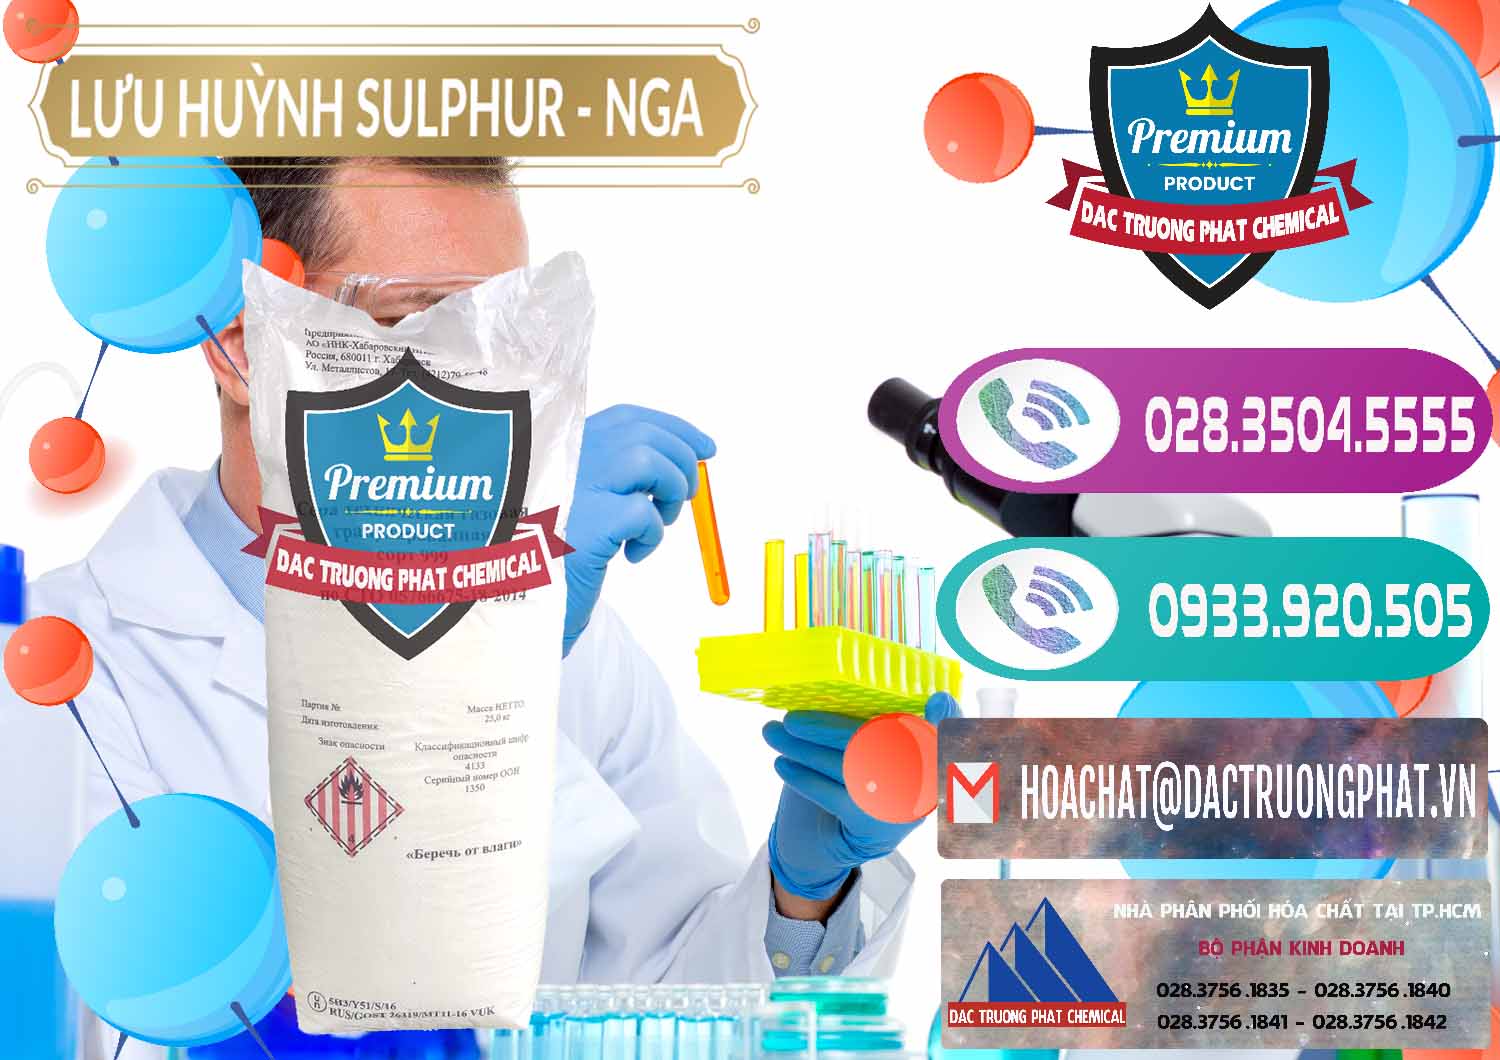 Nơi chuyên kinh doanh & bán Lưu huỳnh Hạt - Sulfur Nga Russia - 0200 - Công ty kinh doanh - phân phối hóa chất tại TP.HCM - hoachatxulynuoc.com